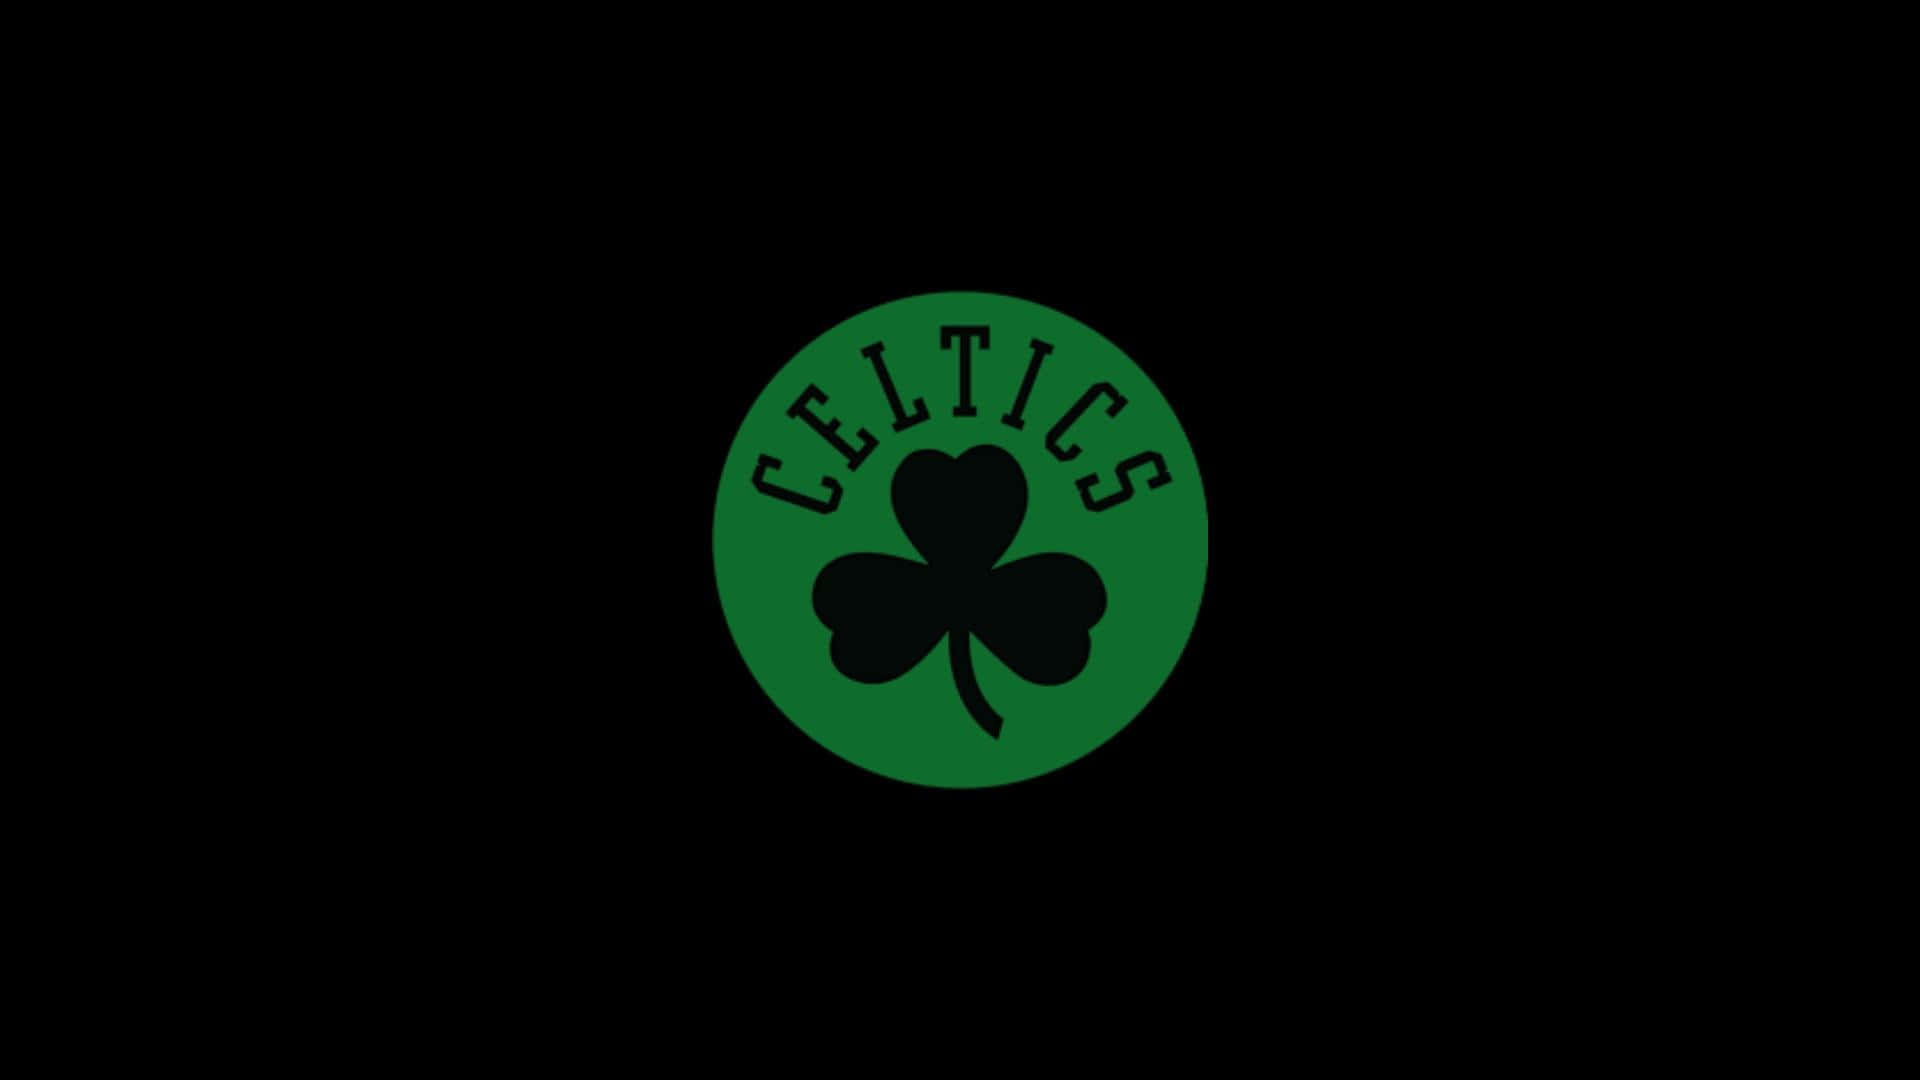 Logotipoclásico De Los Celtics. Fondo de pantalla